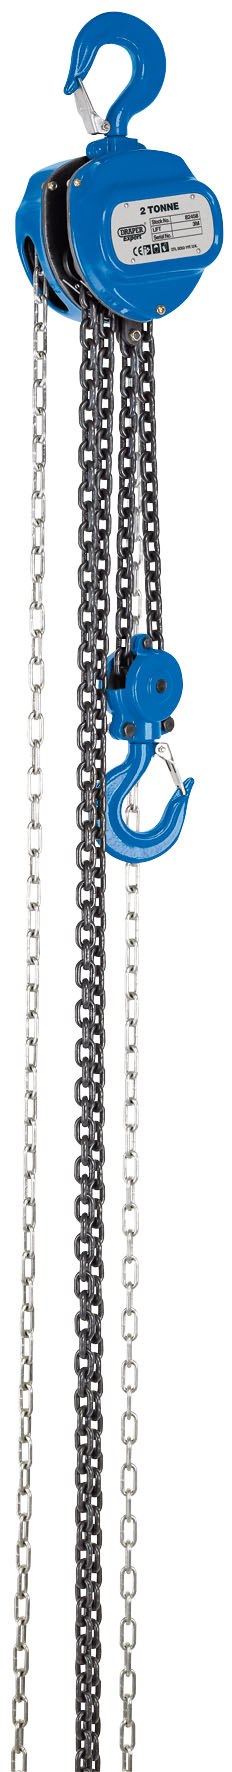 Chain Hoist/Chain Block (2 Tonne)